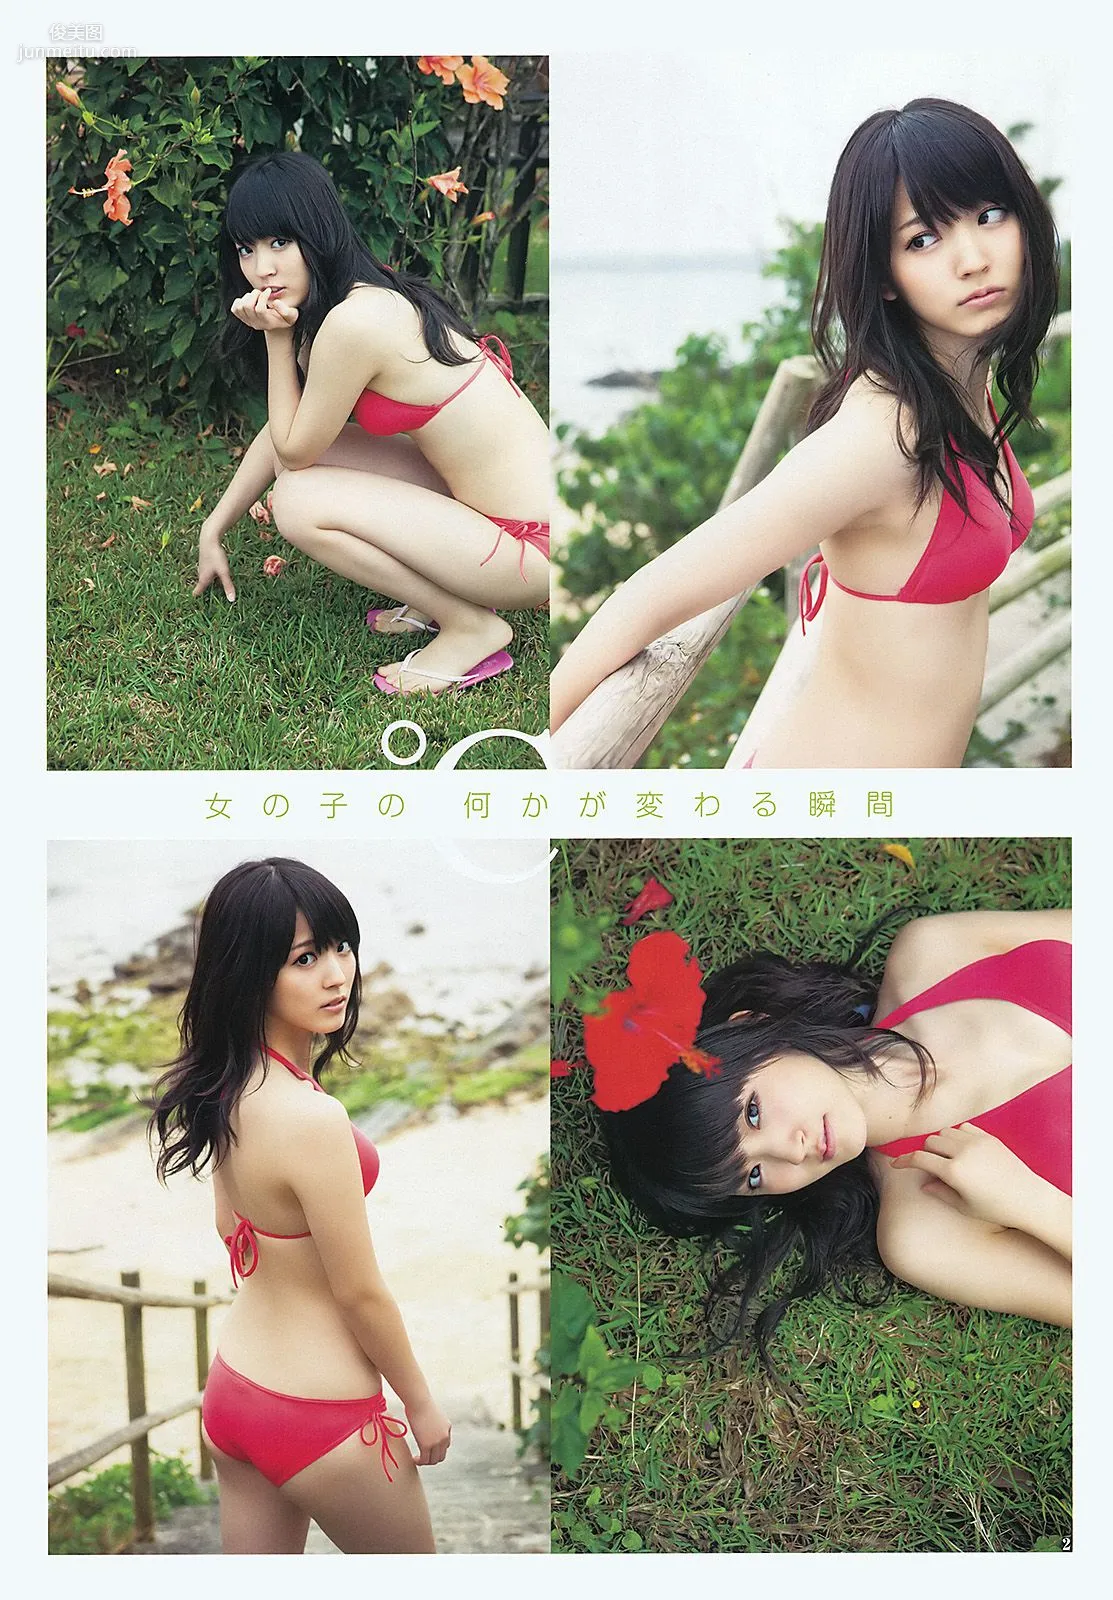 鈴木愛理 柏木由紀 疋田英美 [Weekly Young Jump] 2012年No.20 写真杂志3